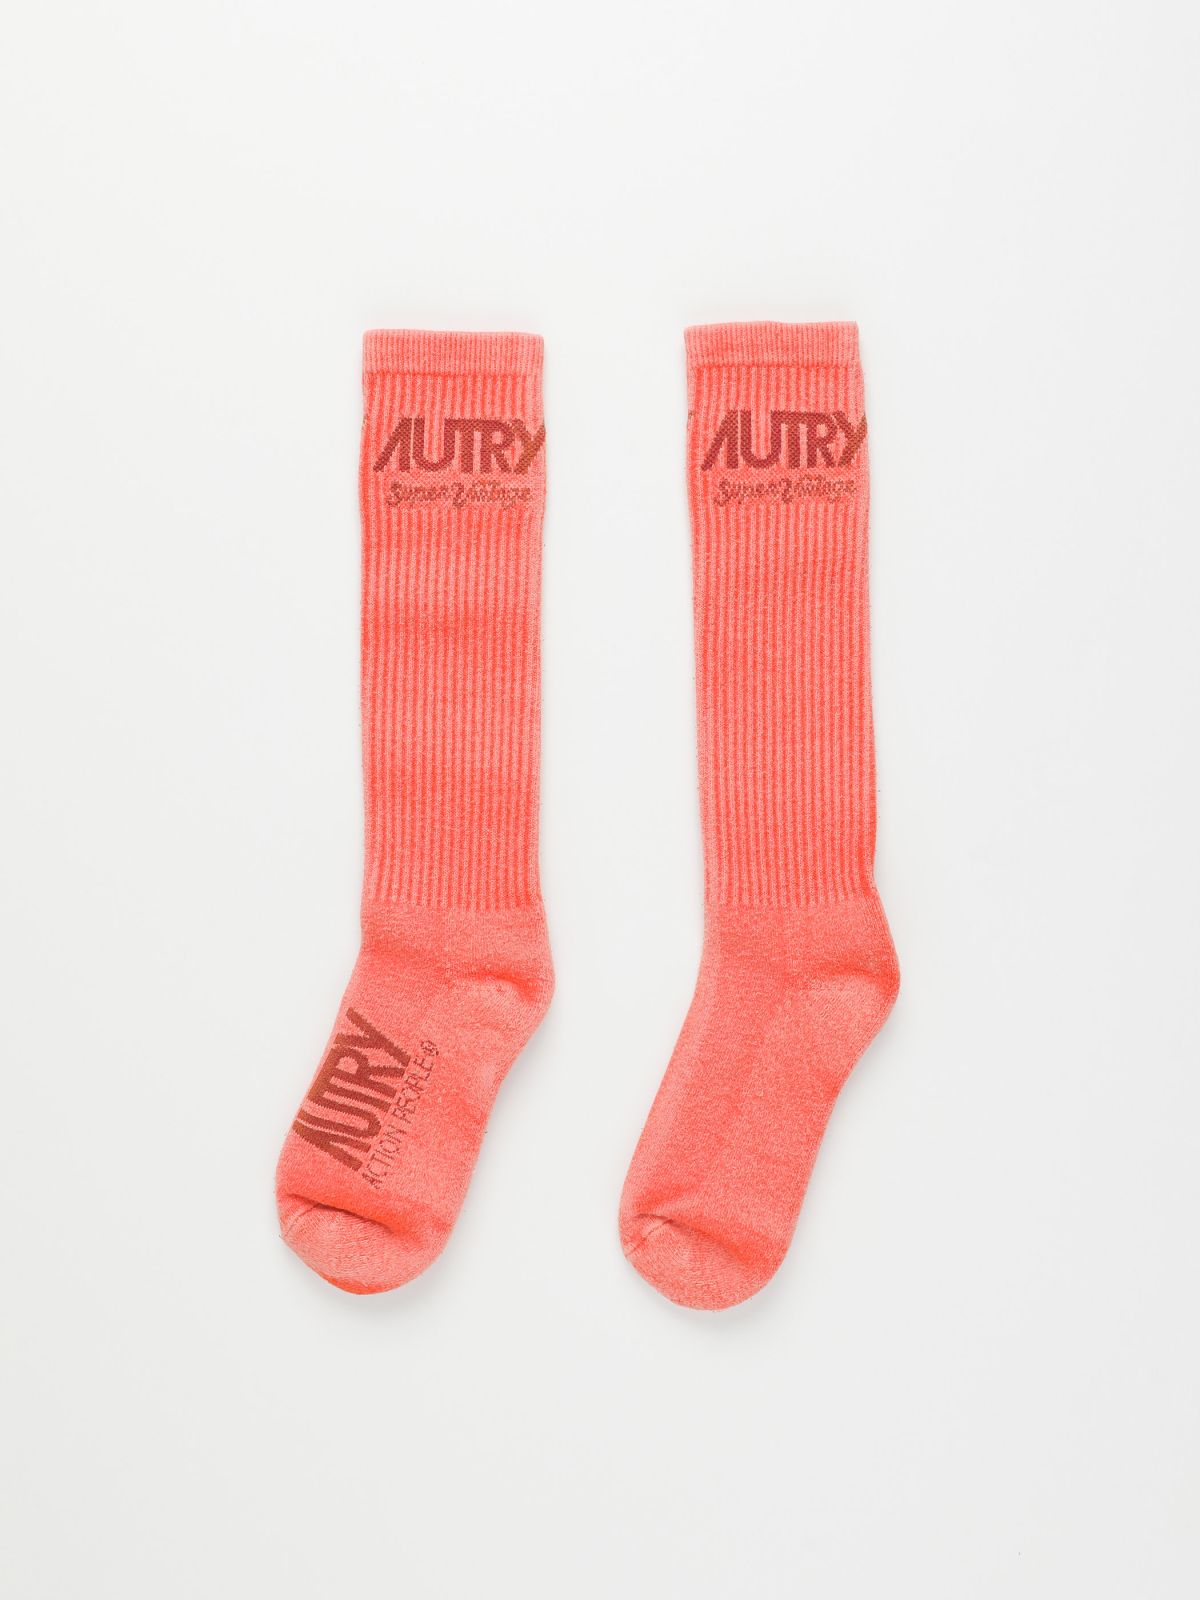  זוג גרביים עם לוגו / נשים של AUTRY